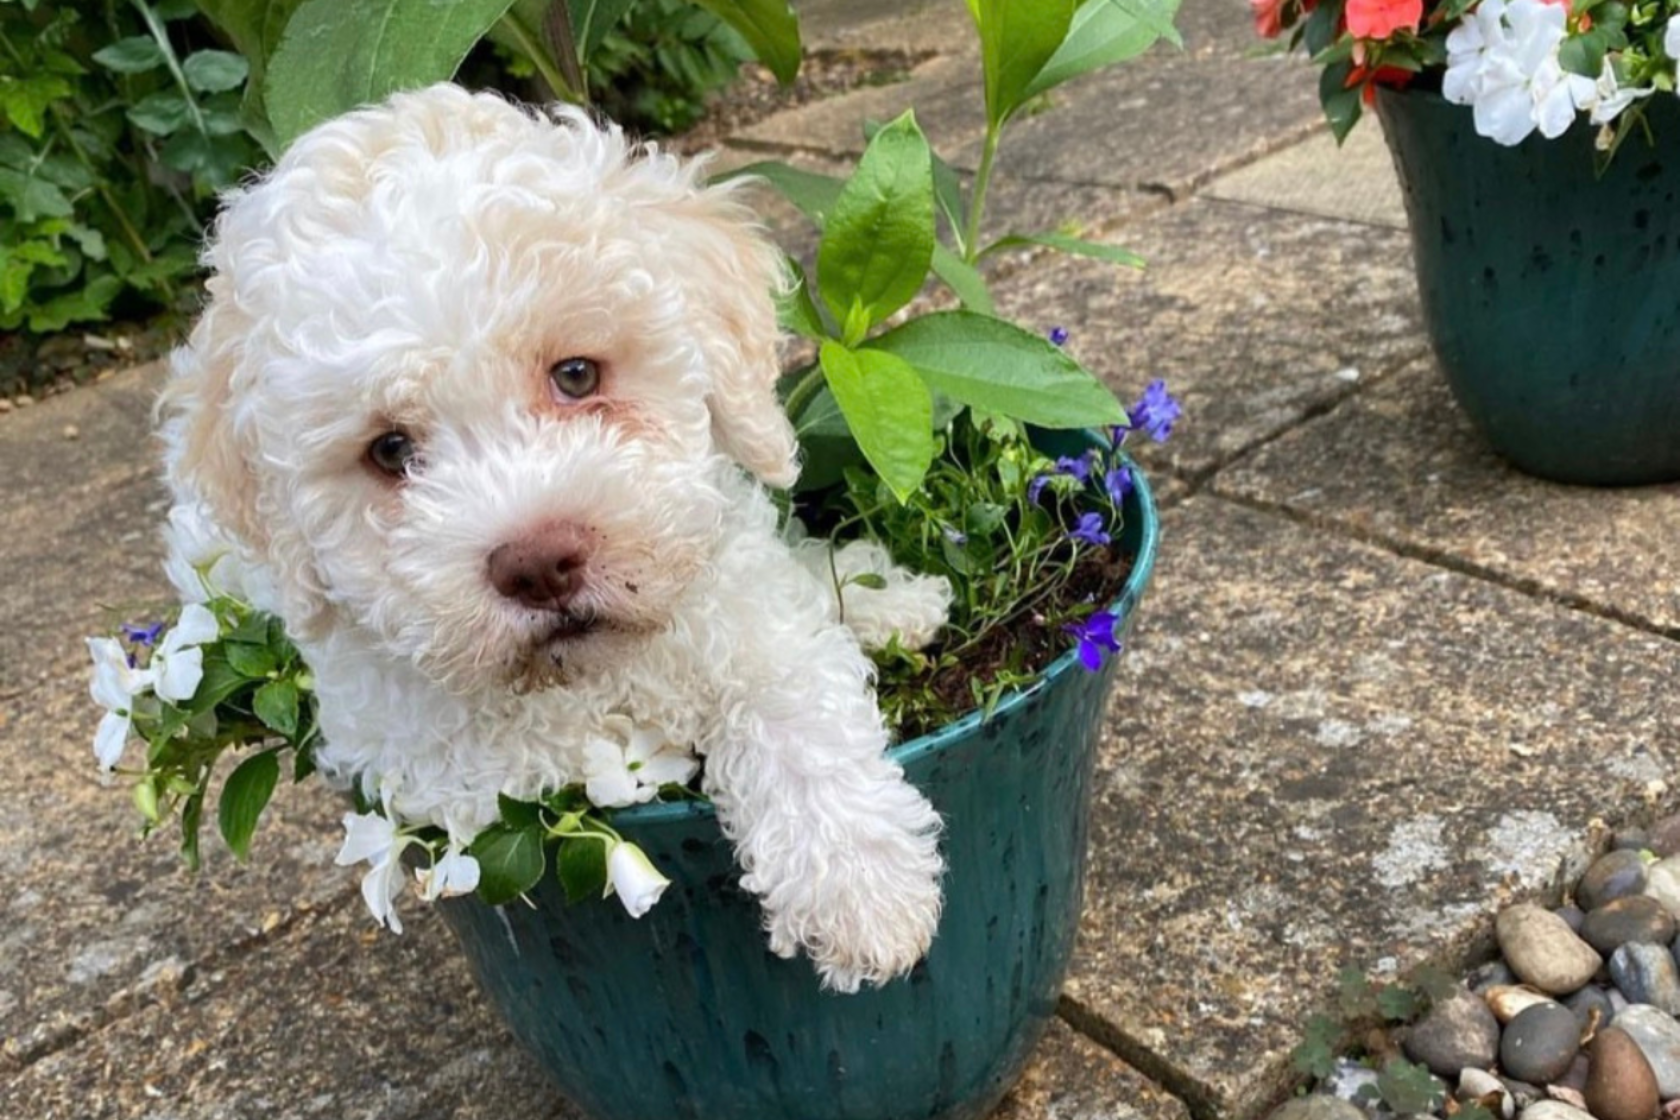 Puppy in a flower pot